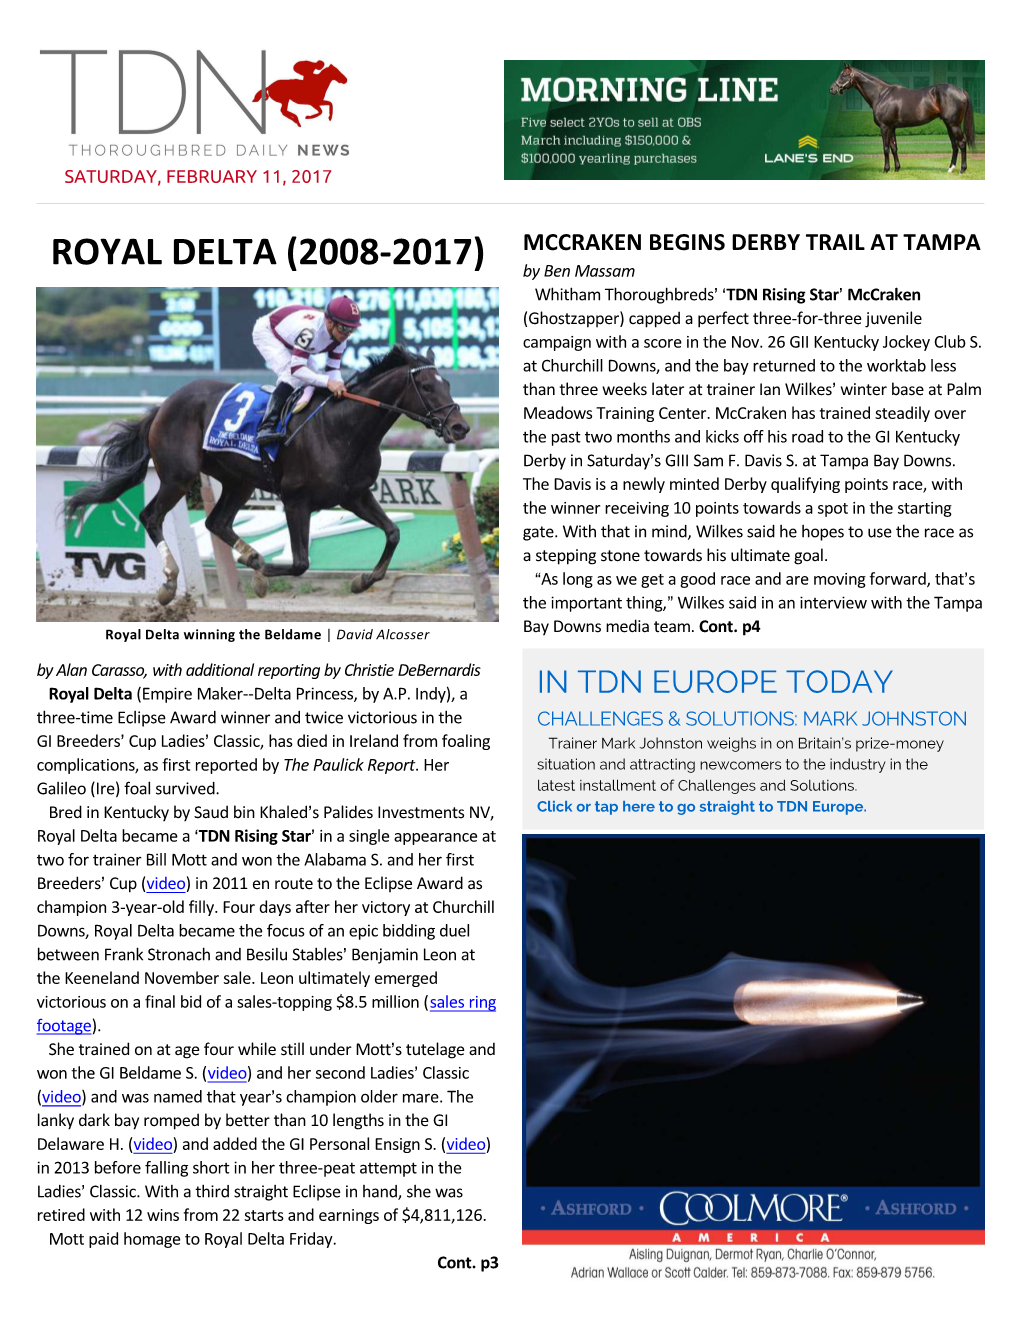 Royal Delta (2008-2017)